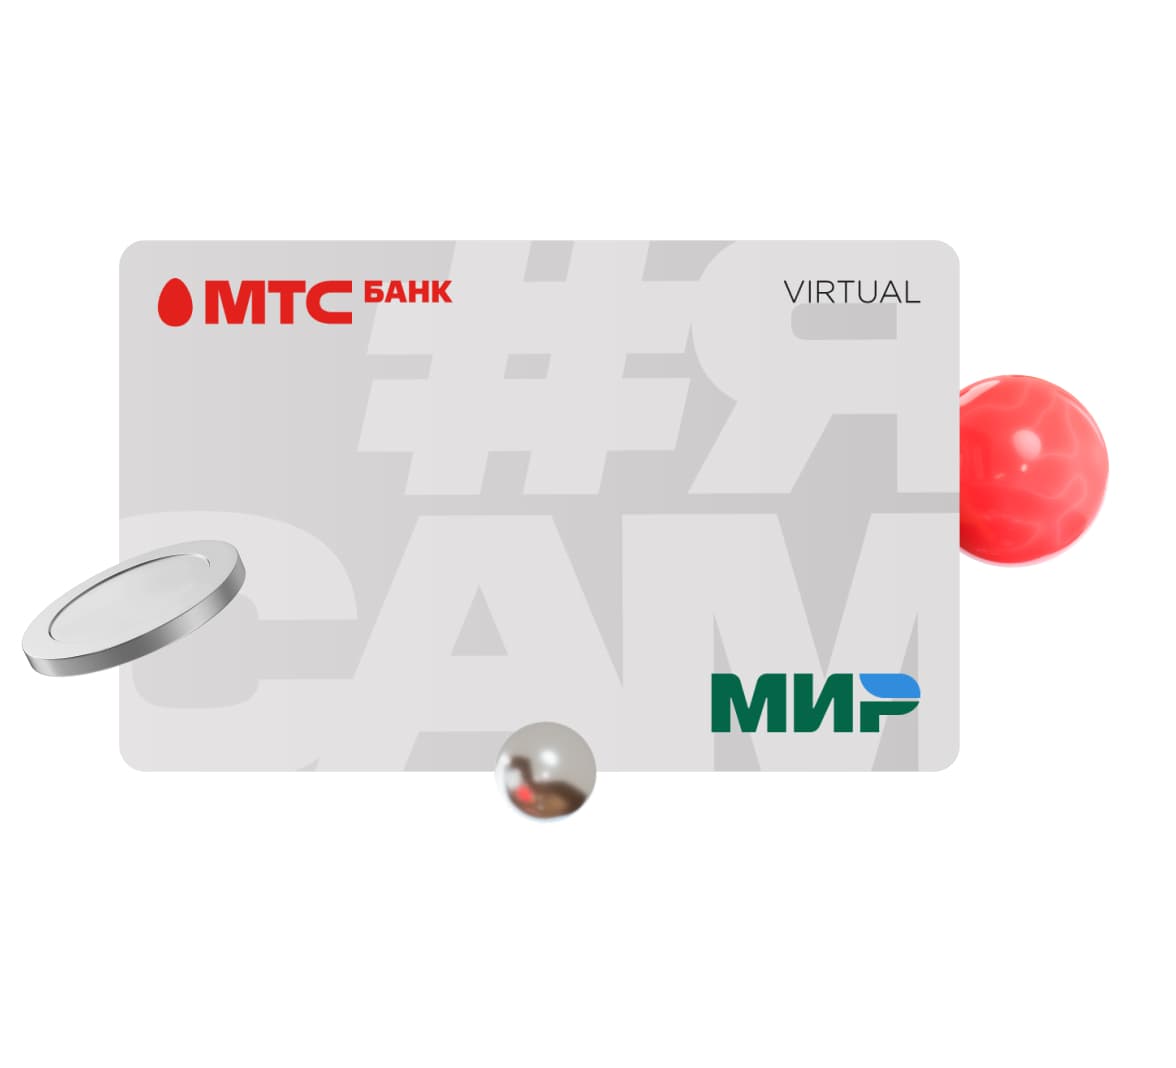 Оформите самозанятость в МТС Банке — расчетный счет для самозанятых иде-бетовая карта, эквайринг и другие преимущества при оформлении